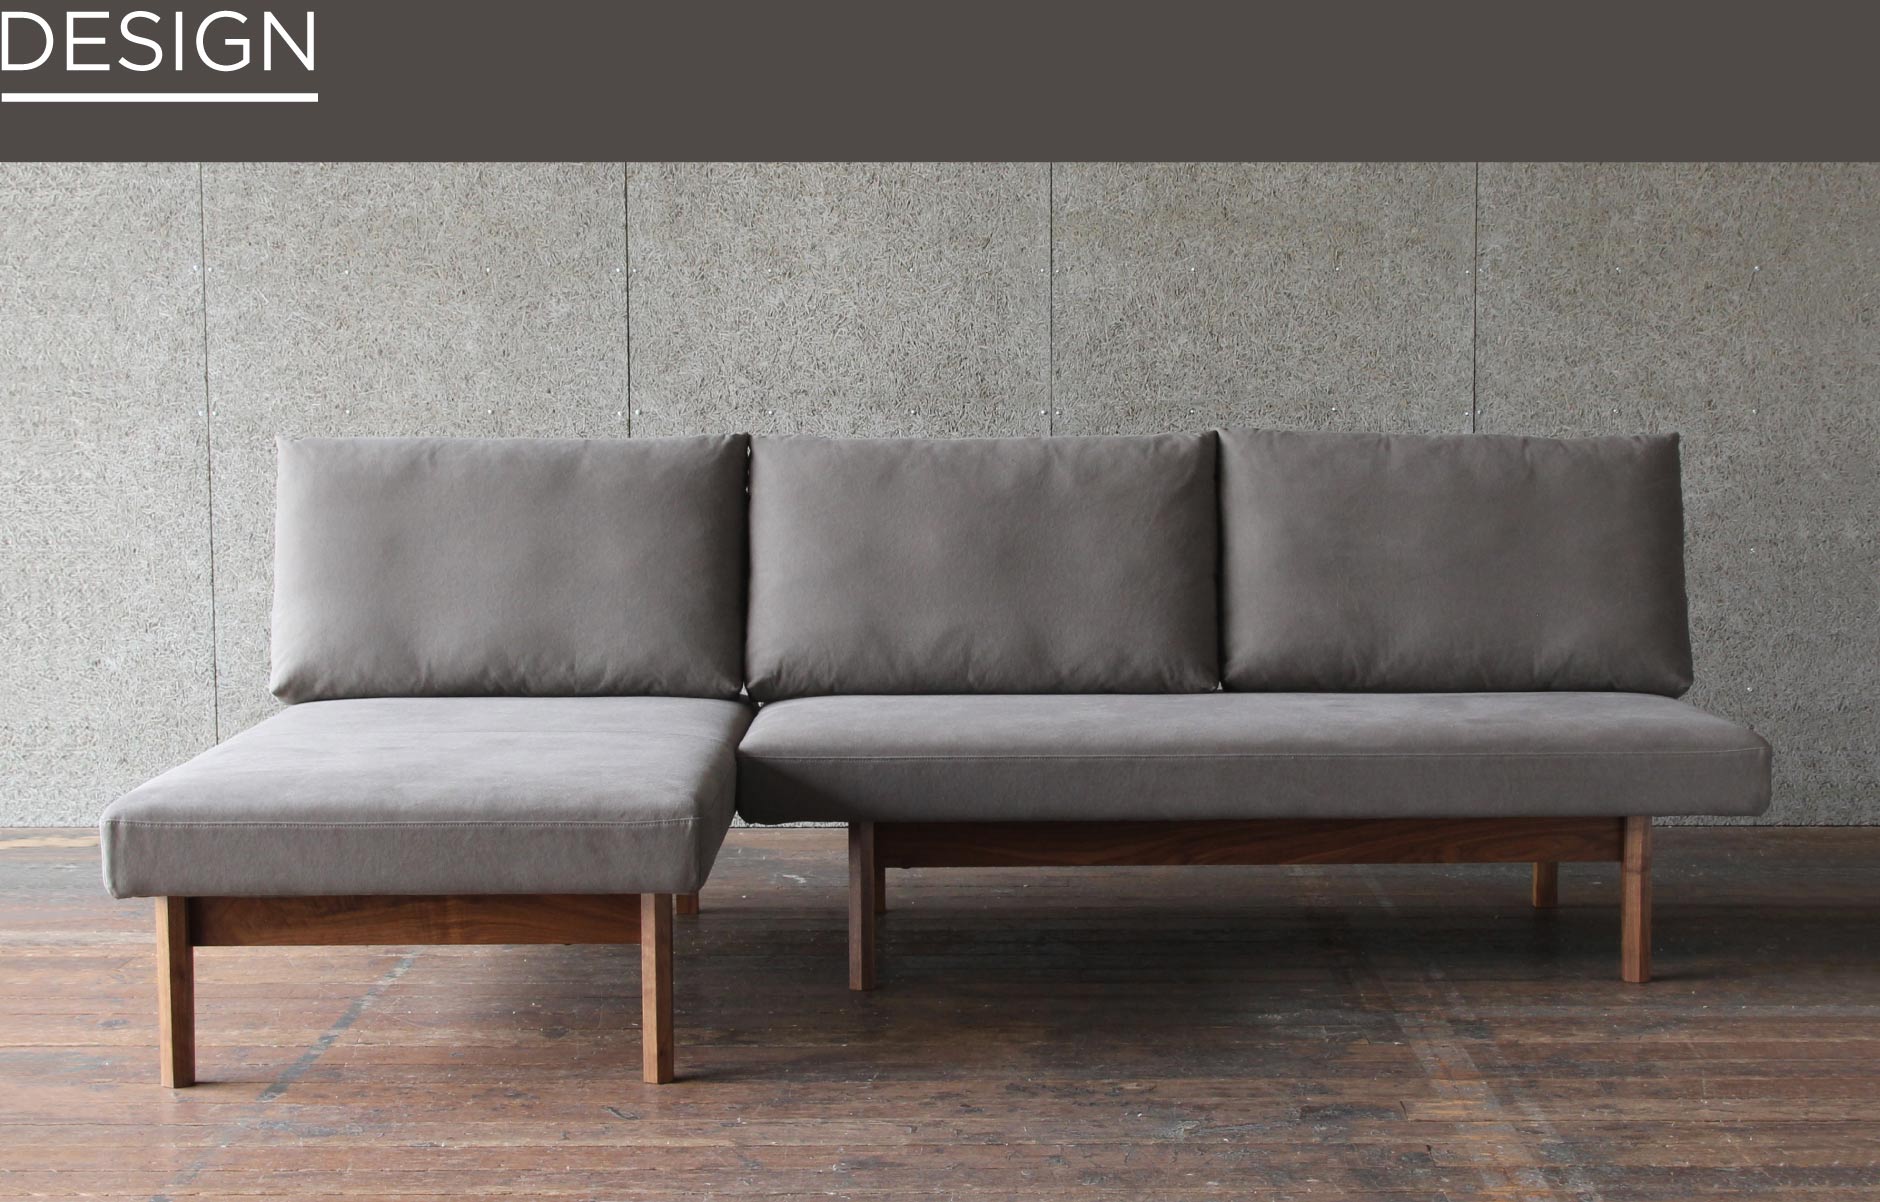 リビング、ダイニングどちらでも使いやすい木製ソファ。大阪店の家具でも人気のあるアームレスタイプのソファです。